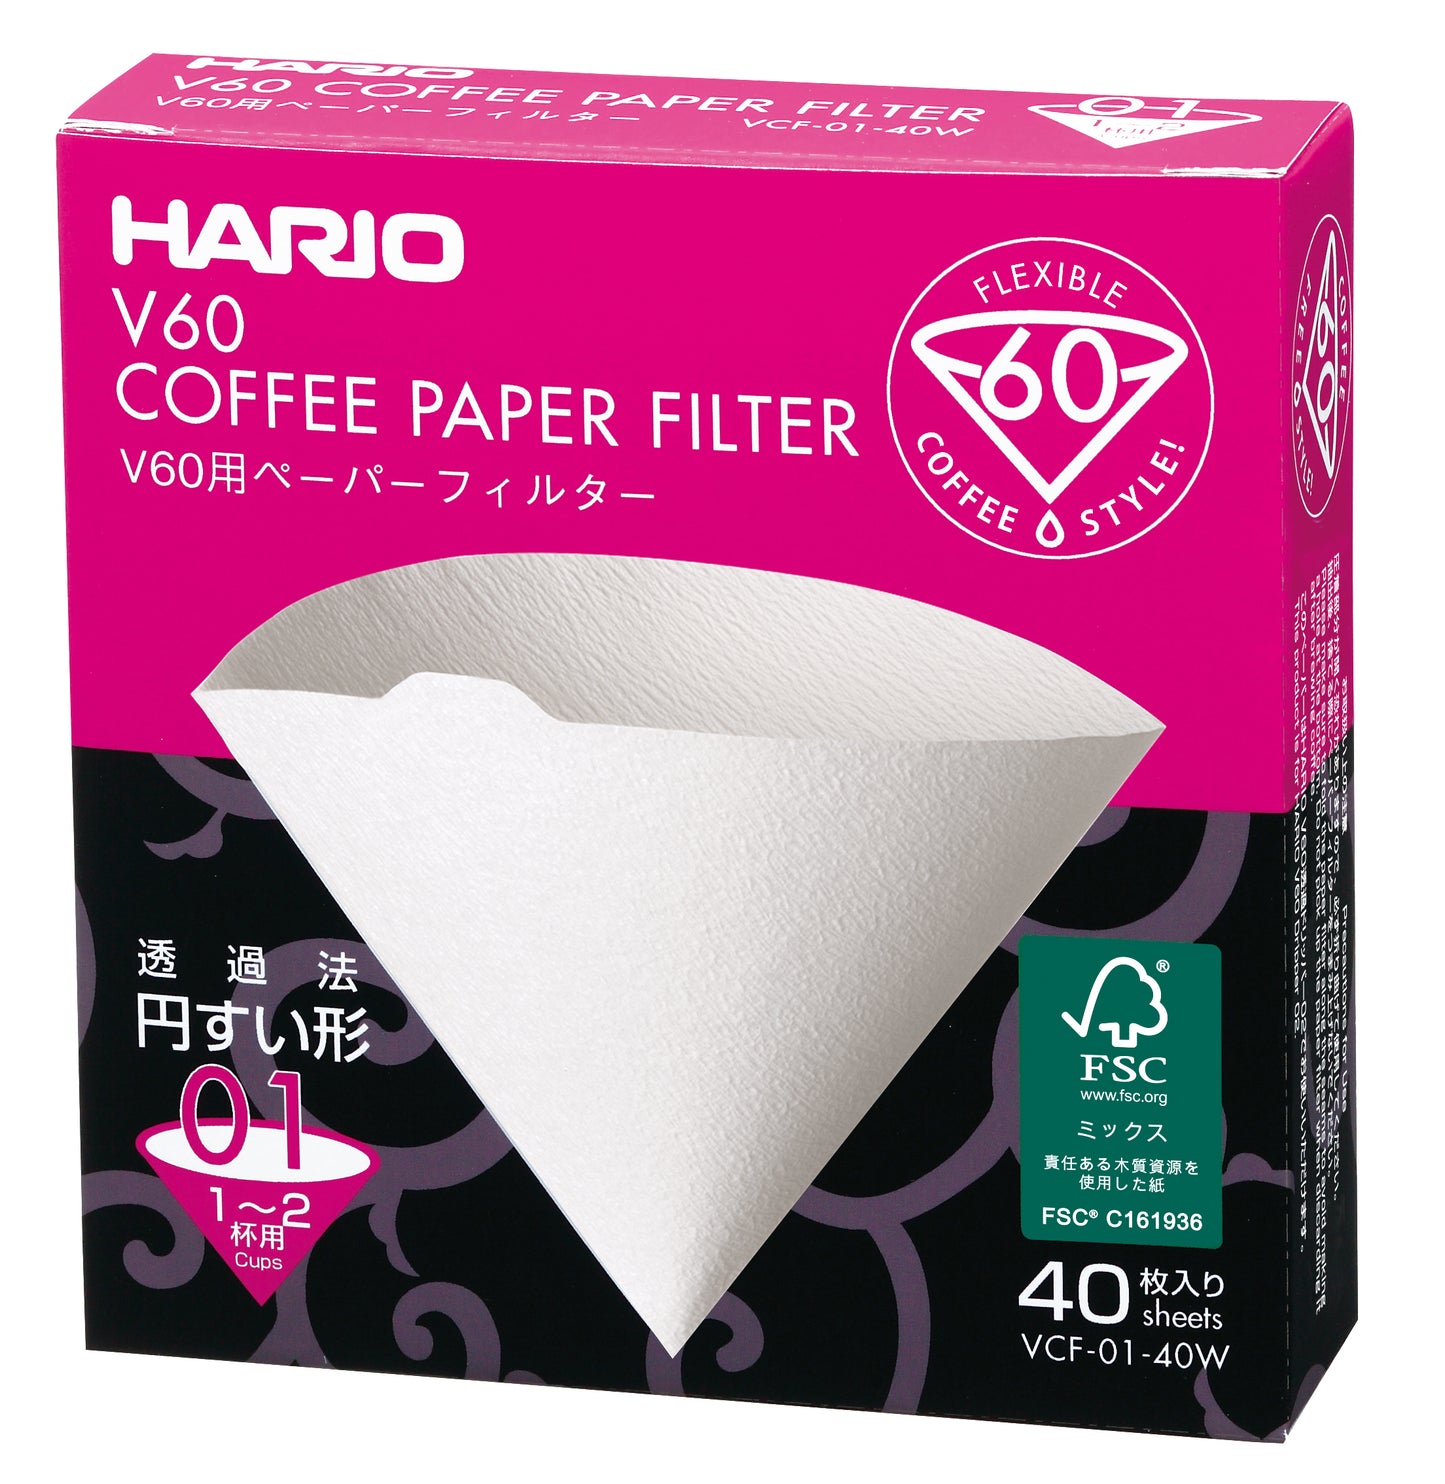 Hario V60 filterpapier 01